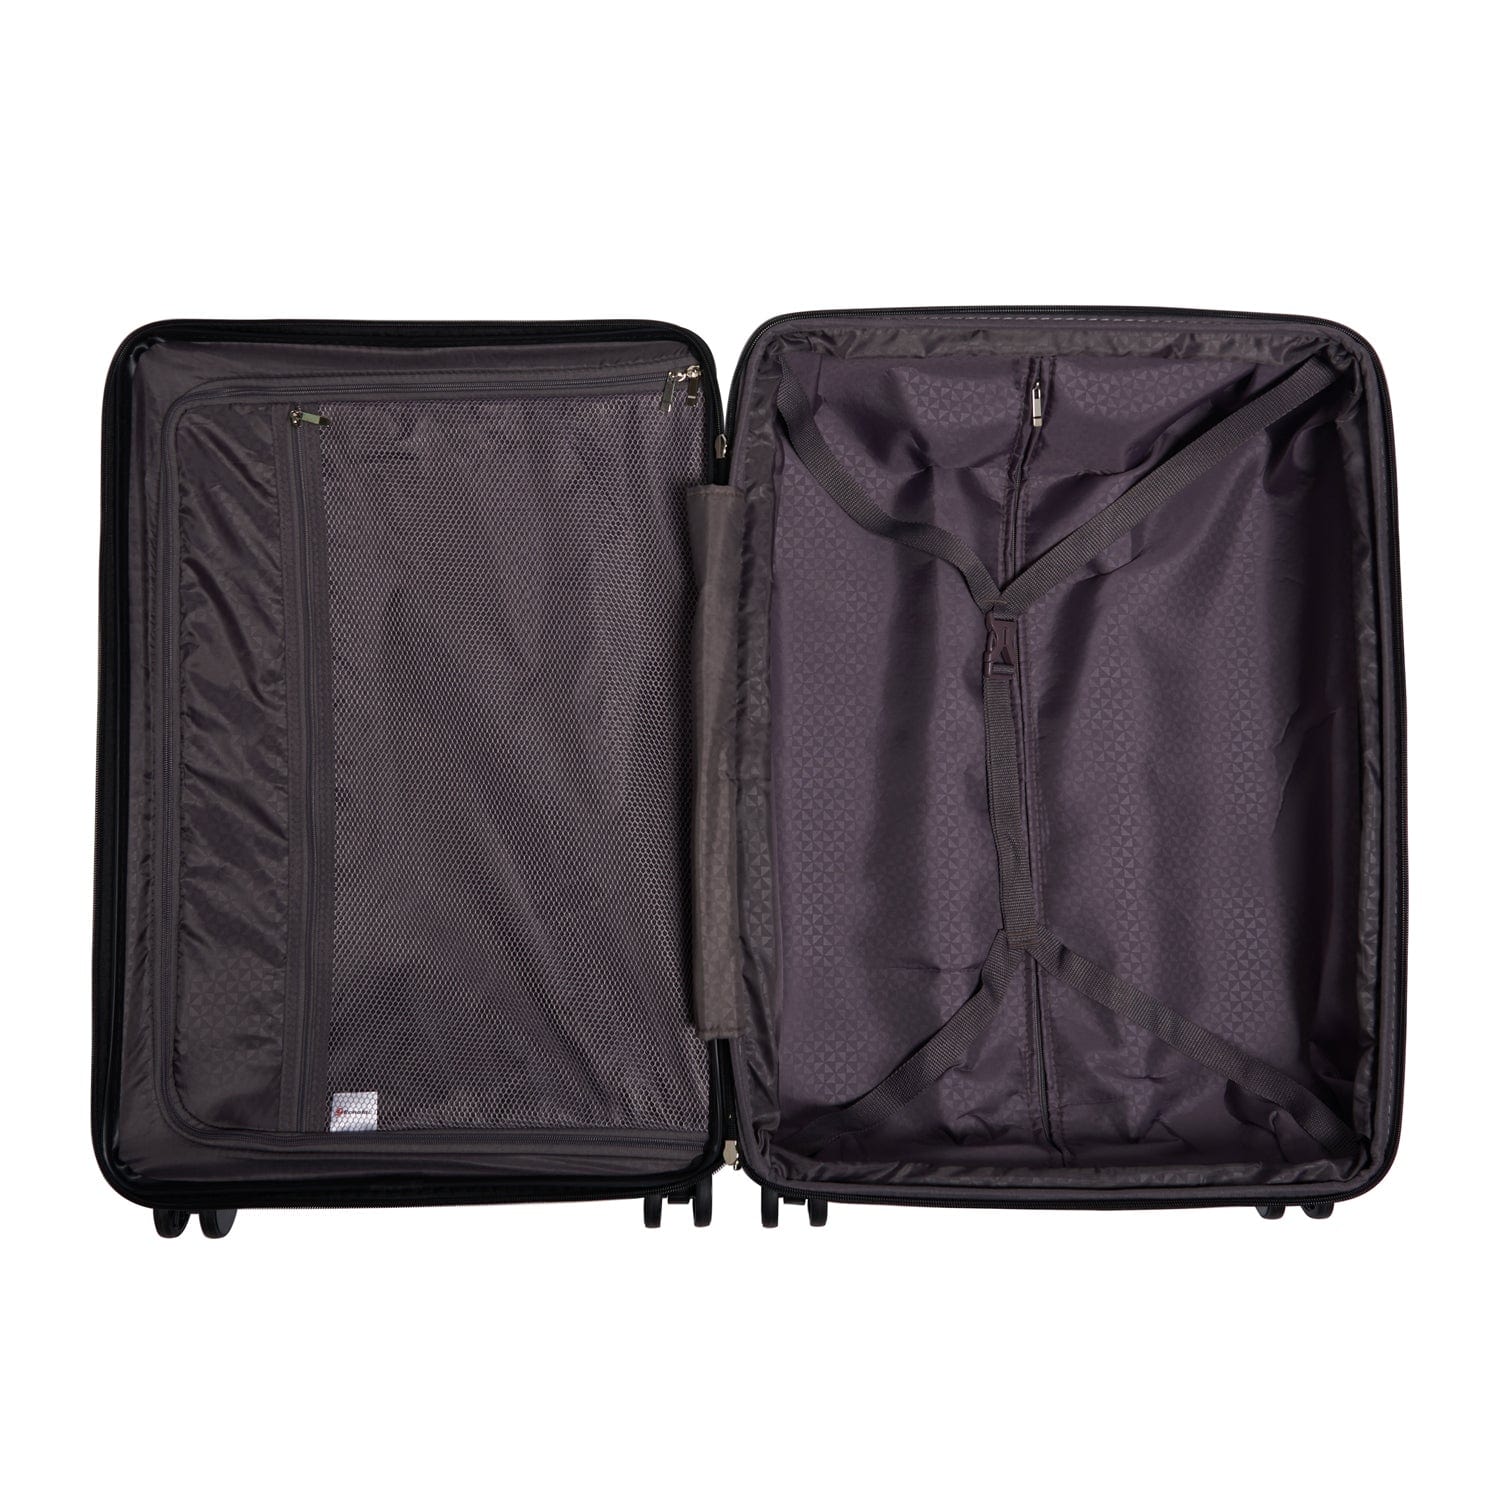 إيكولاك حقيبة سفر فاخرة 71 سم قابلة للتوسيع 4 عجلات مزدوجة تسجيل الوصول - أسود - CTH0062 S- 20 BLACK